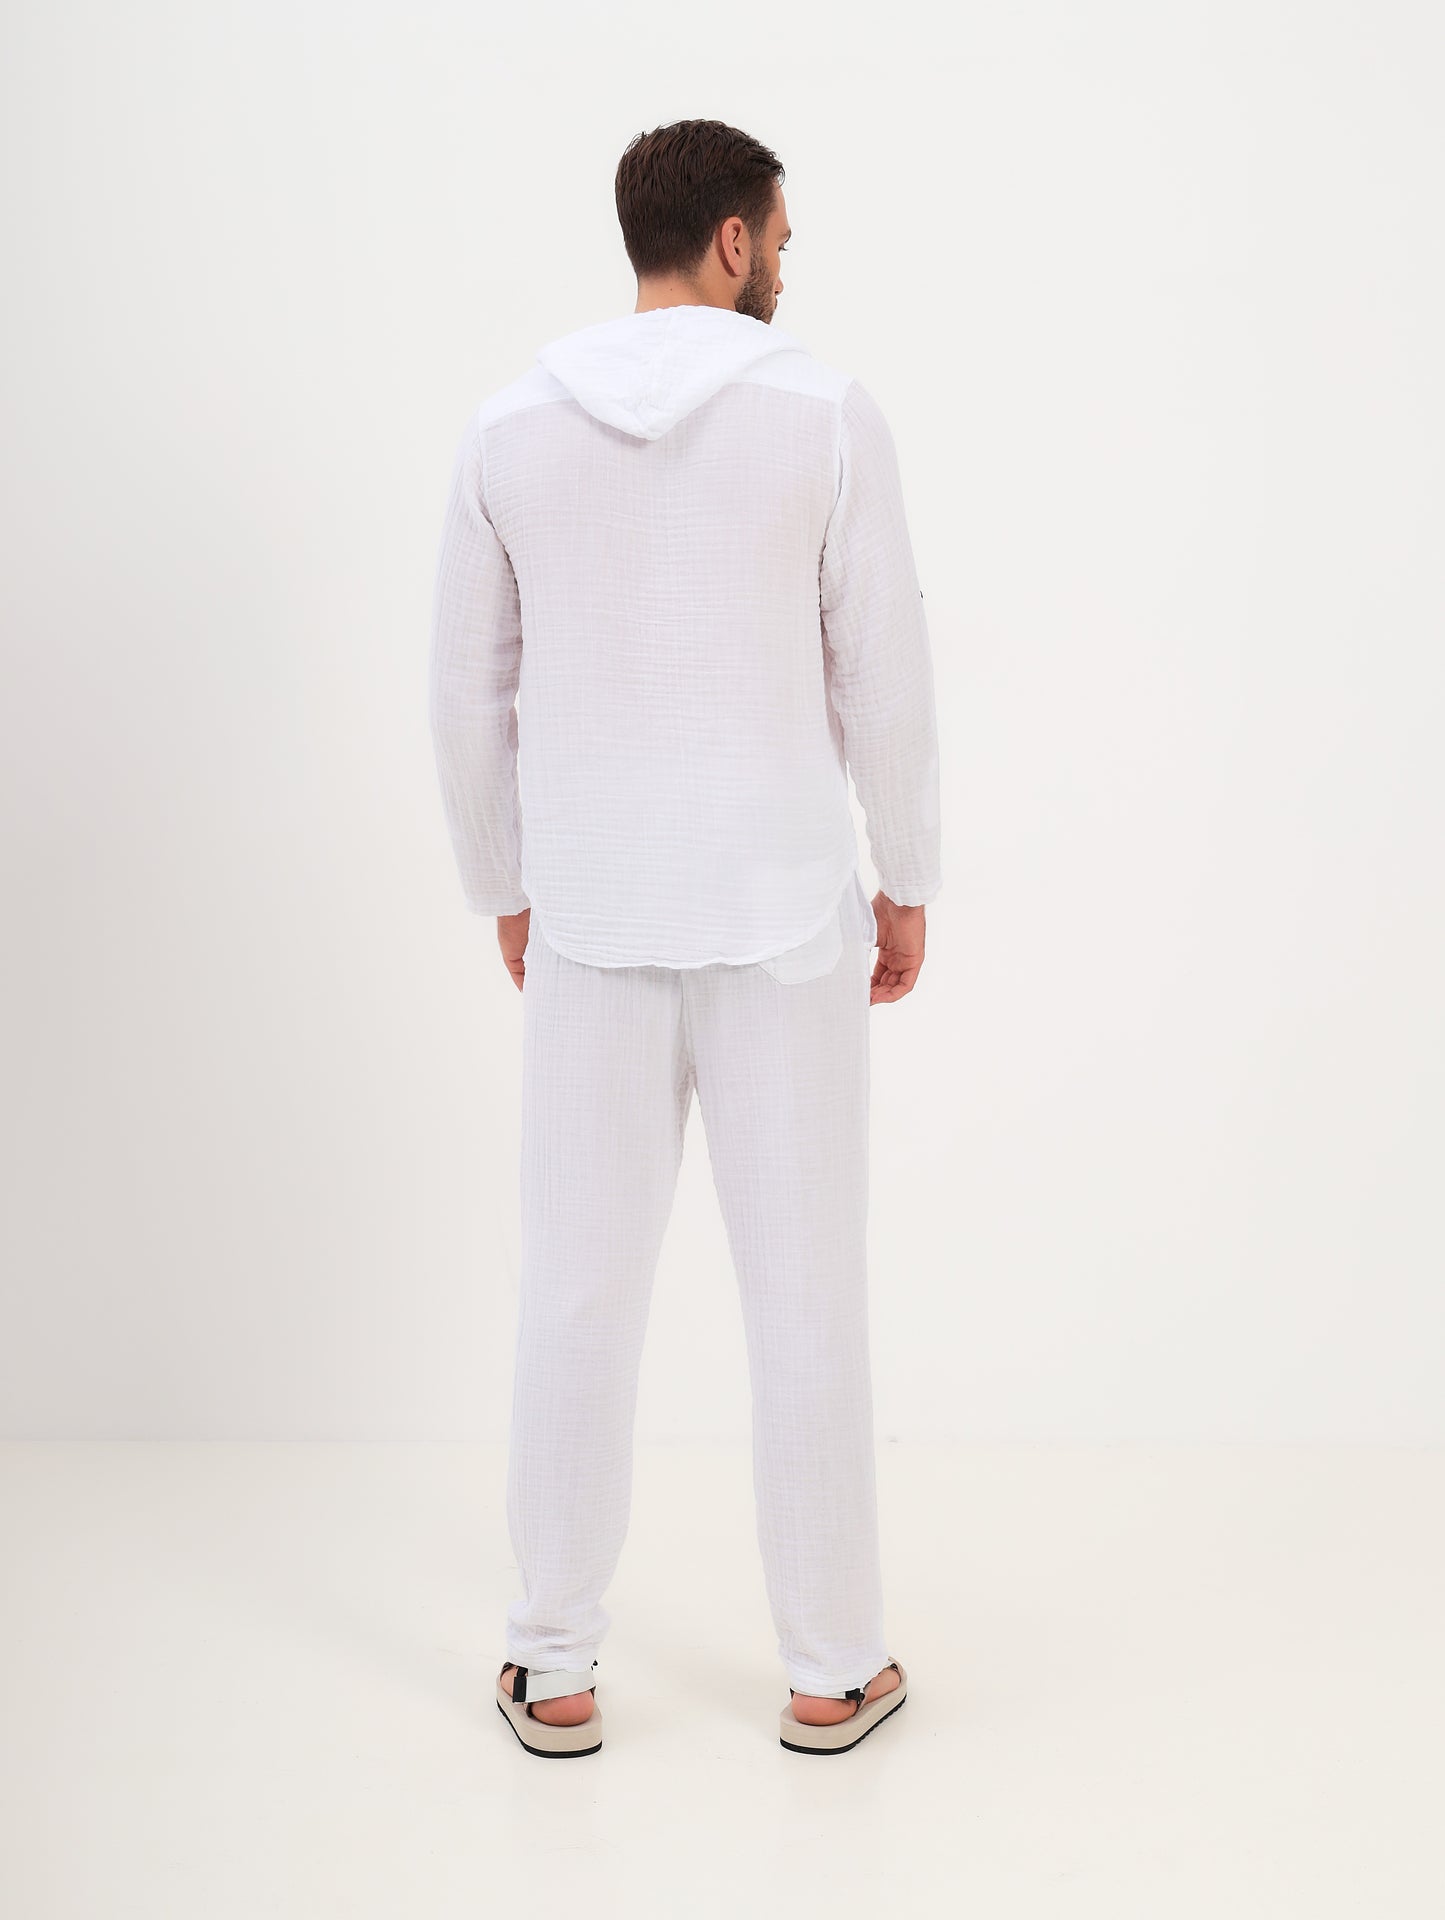 2teiliger Herren Sommer Mode Shirt Hemd mit Kapuze und langer Hose mit Kordelzug aus lässige Musselin Freizeit LMS-6457 Weiß